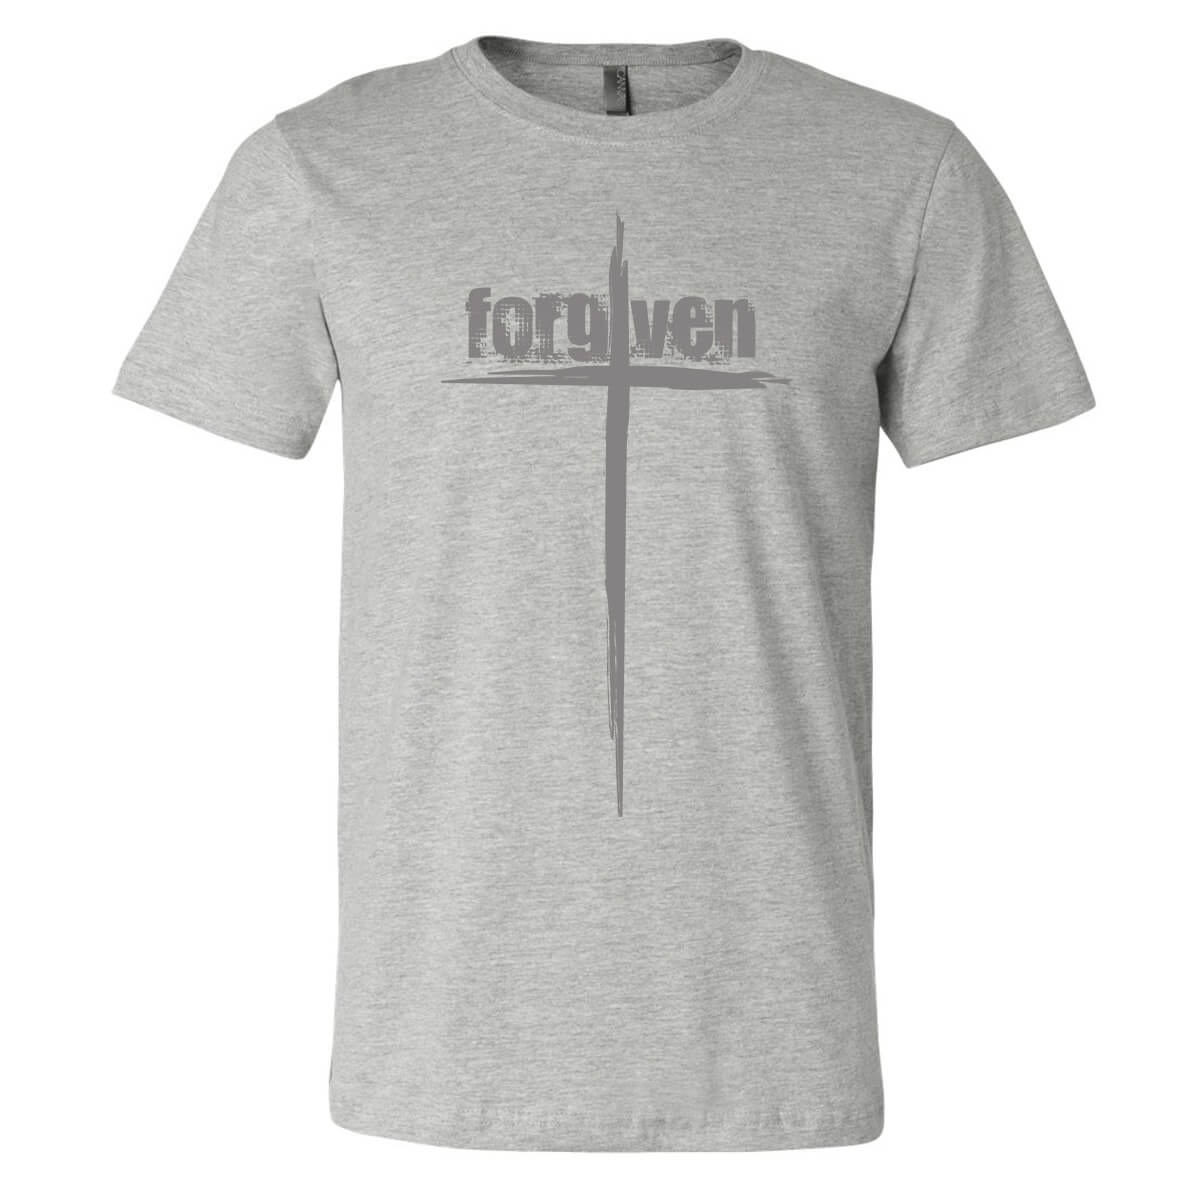 Forgiven Cross T-Shirt FINAL SALE ITEM